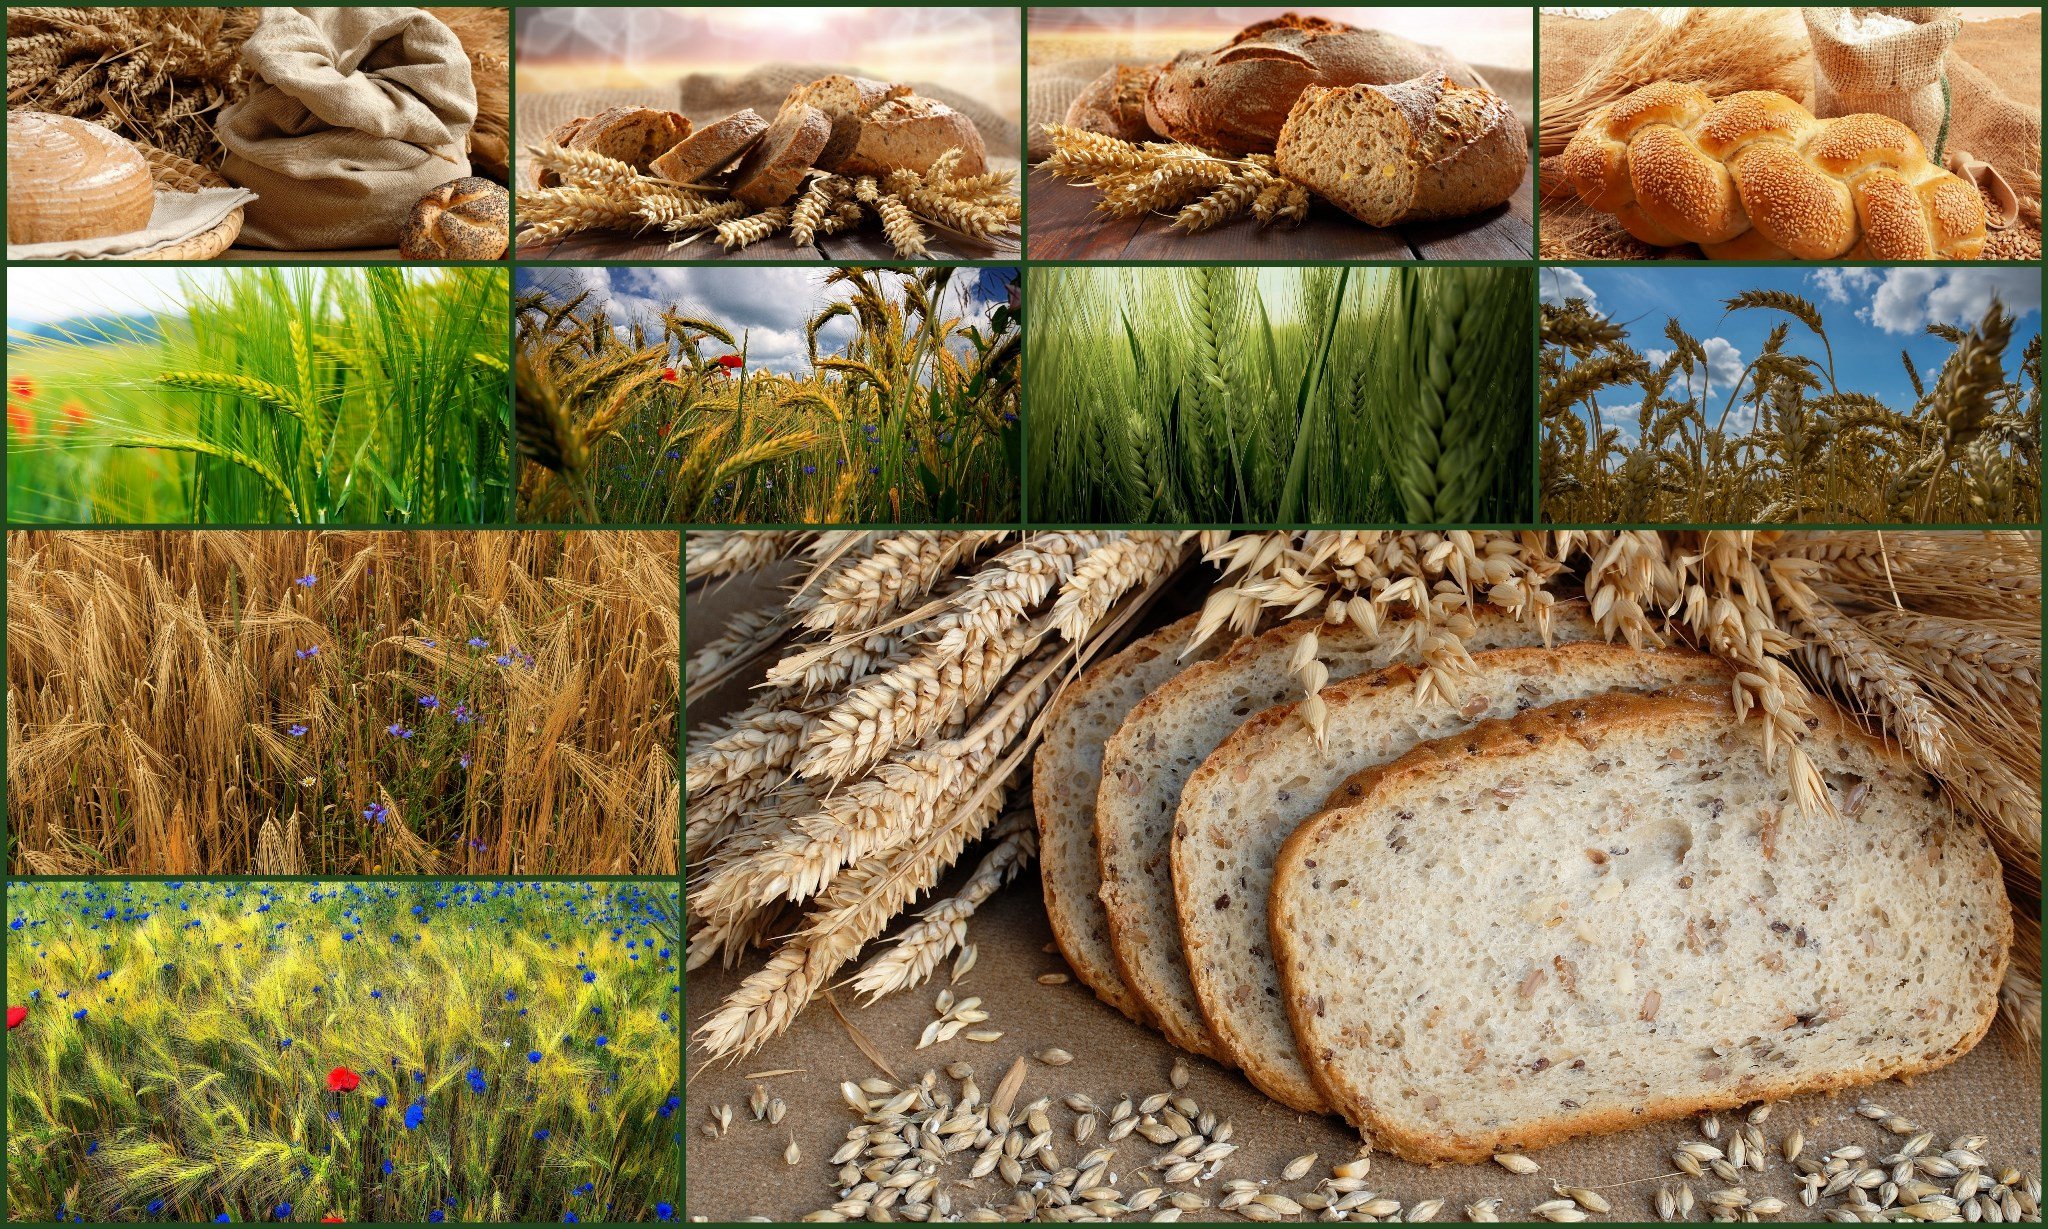 Хлеба зерновые культуры